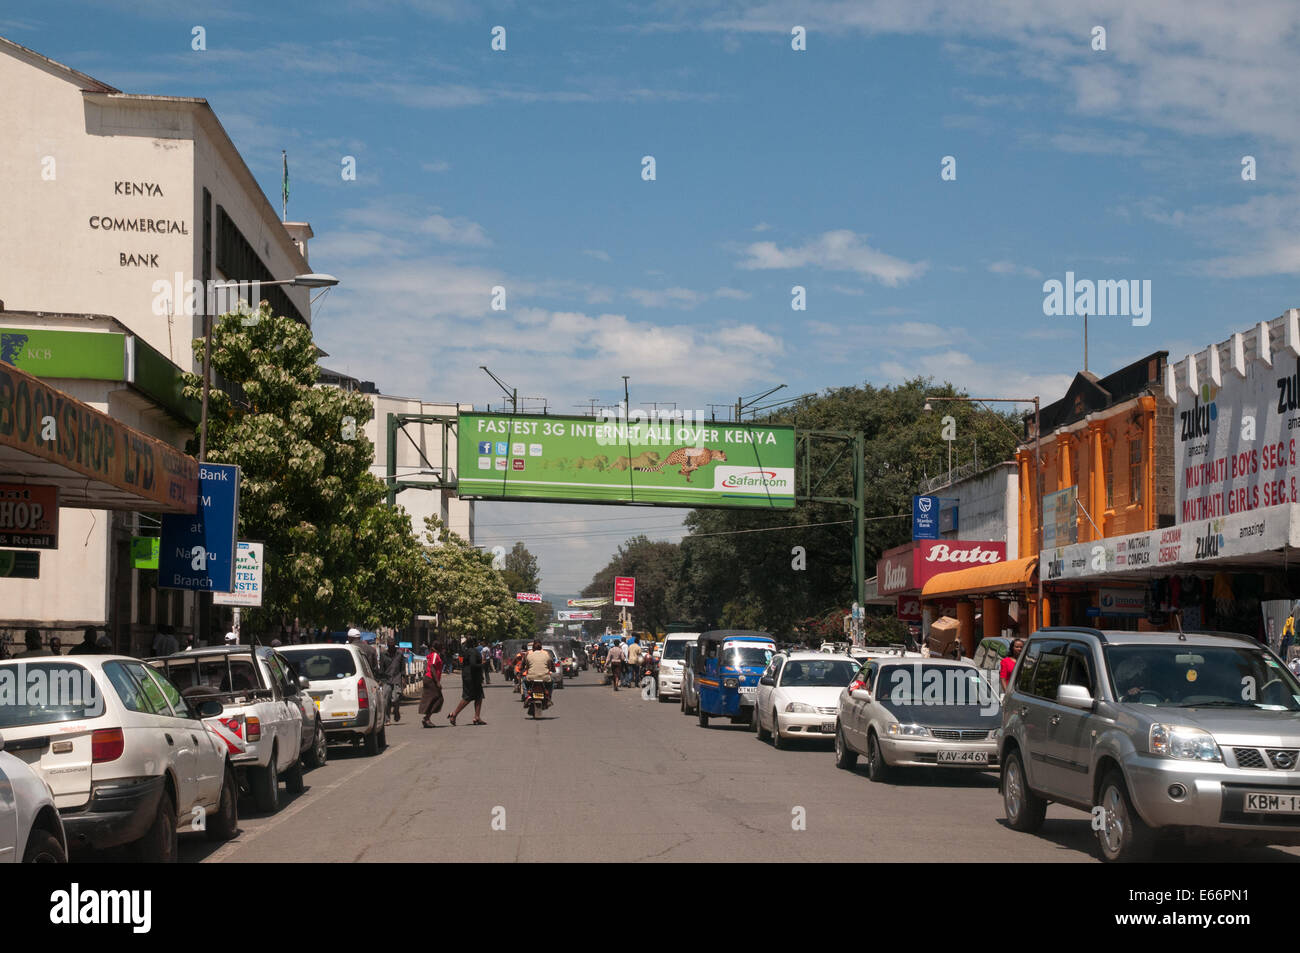 Personnes et de la circulation sur l'avenue Kenyatta Nakuru Kenya Afrique de l'Est avec l'accumulation de la publicité pour le réseau 3G Banque D'Images